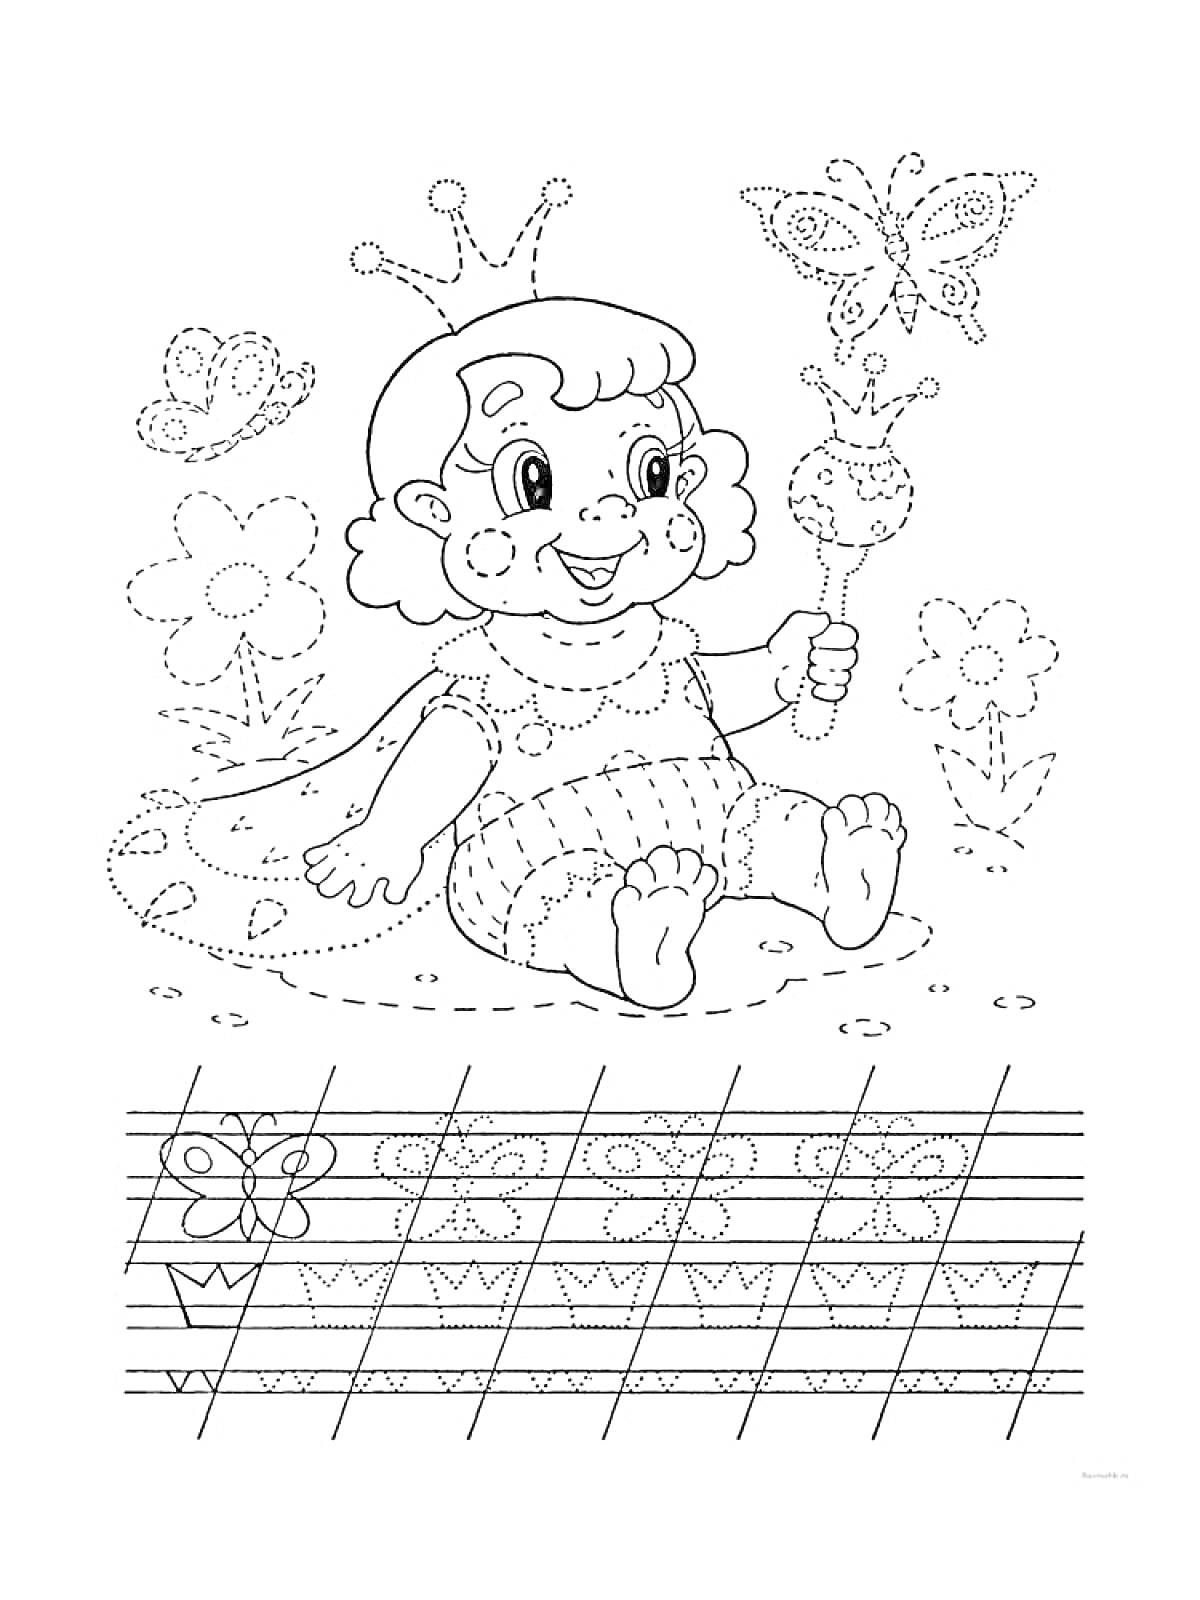 Раскраска Пропись для раскрашивания: девочка-принцесса с короной и волшебной палочкой, сидящая на траве с цветами и бабочками